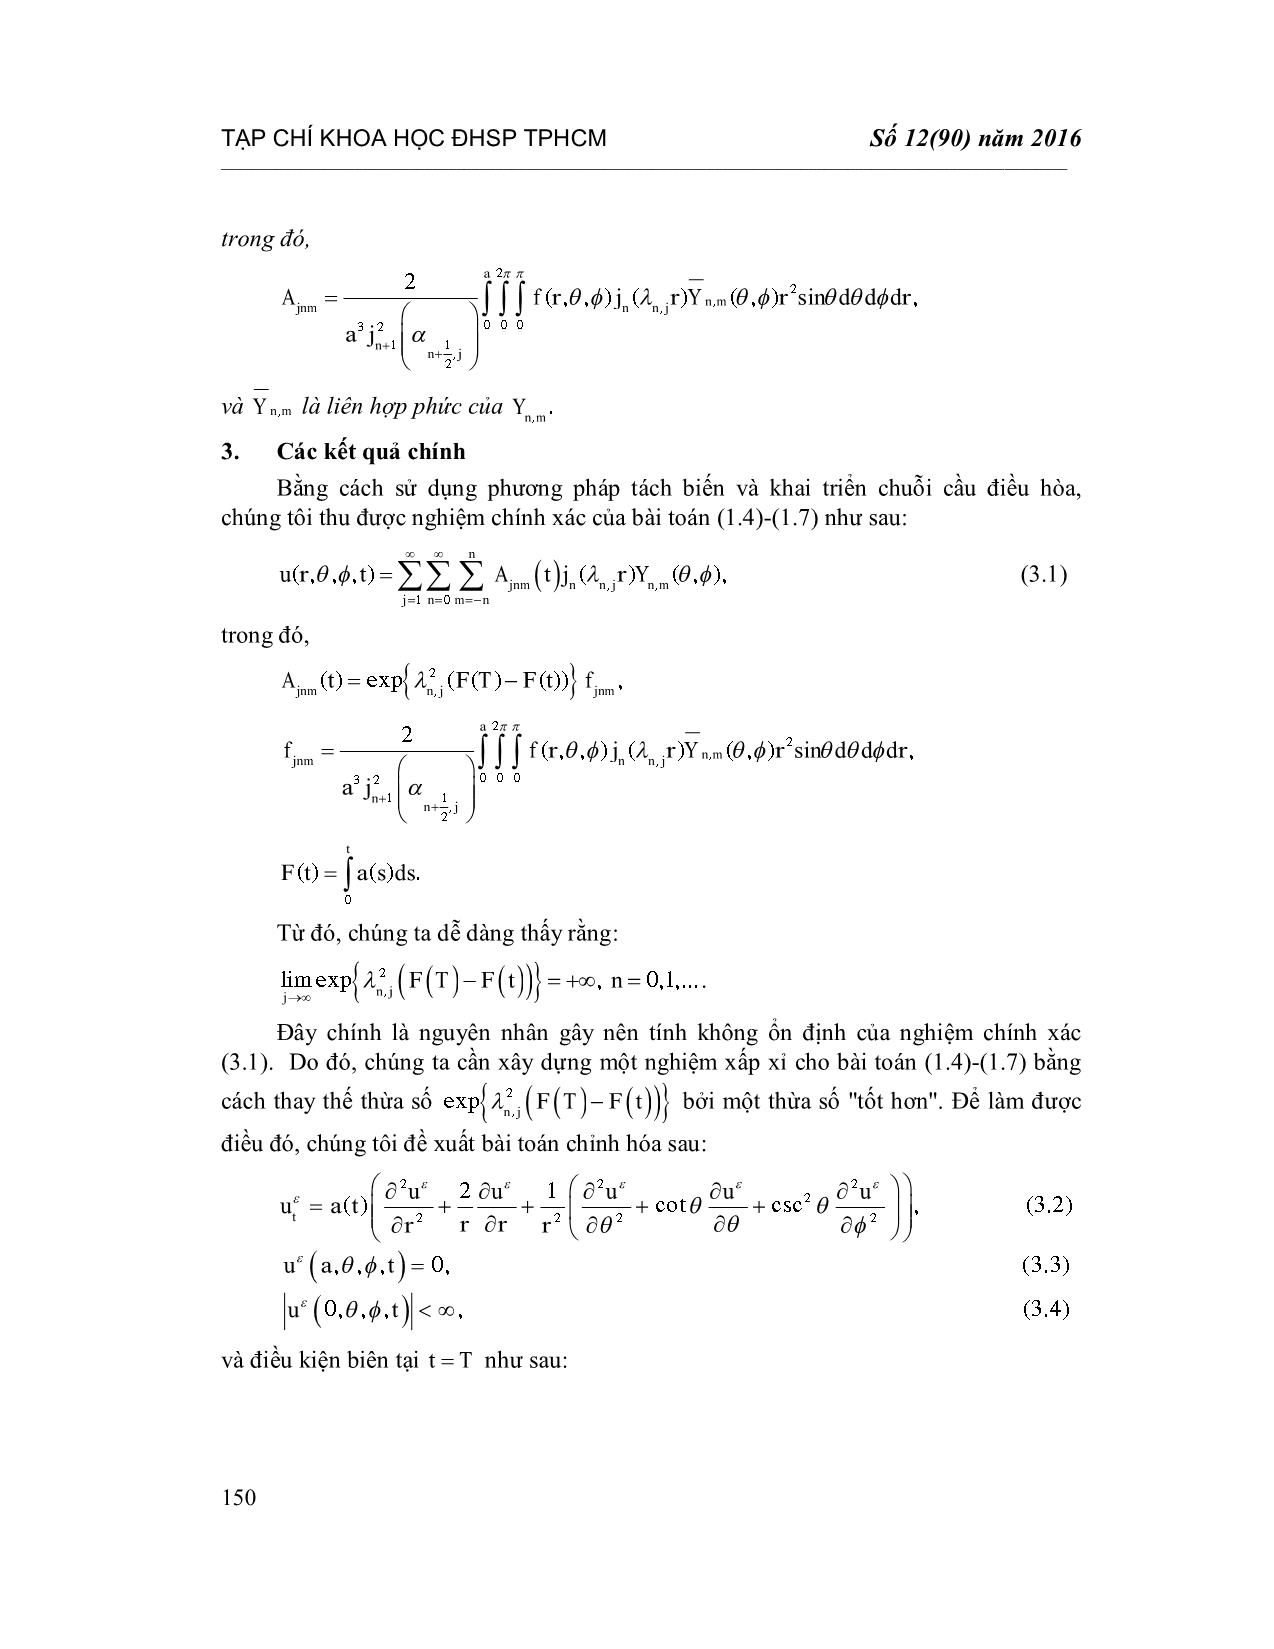 Chỉnh hóa bài toán nhiệt ngược với hệ số phụ thuộc thời gian trong tọa độ cầu trang 6